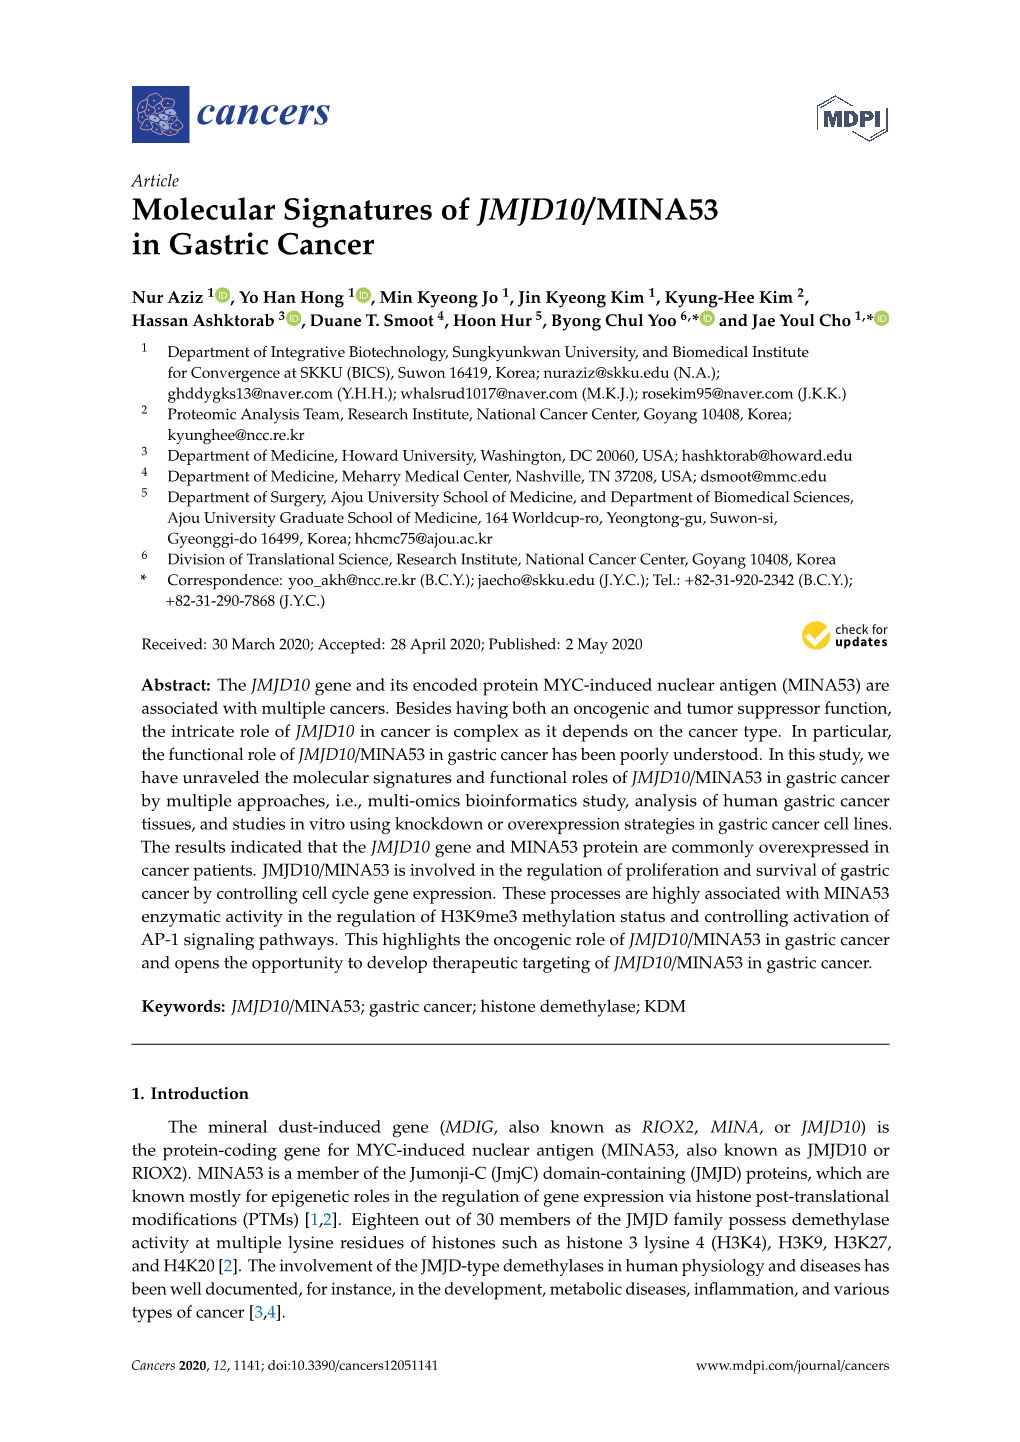 Molecular Signatures of JMJD10/MINA53 in Gastric Cancer